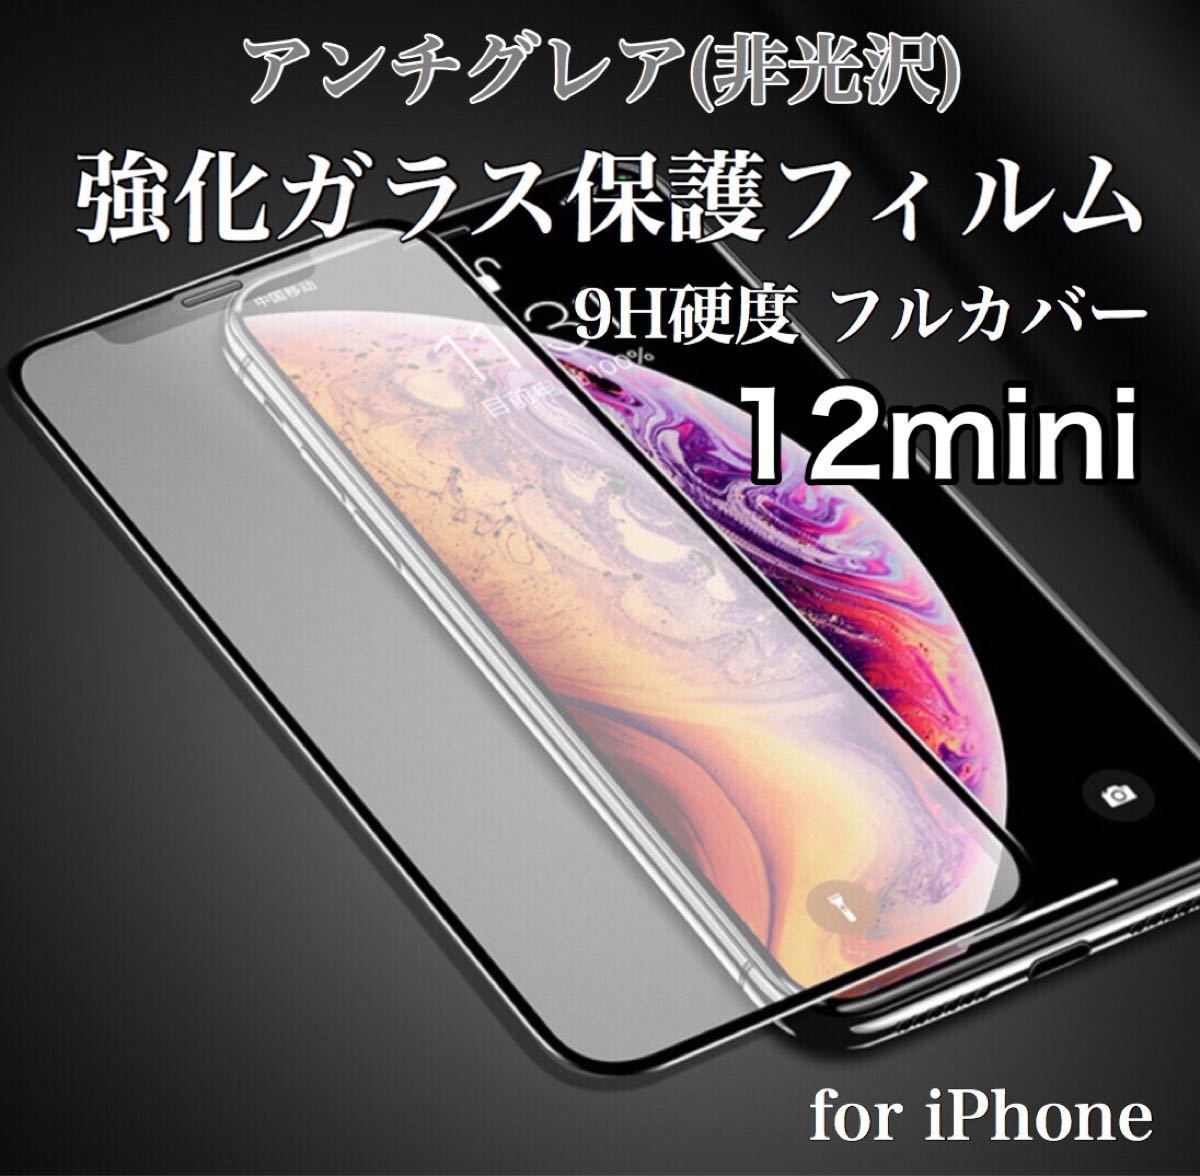 アンチグレア 指紋防止 反射防止 iPhoneフィルム 9H 強化ガラス 10D曲面 全面保護 iPhone12mini